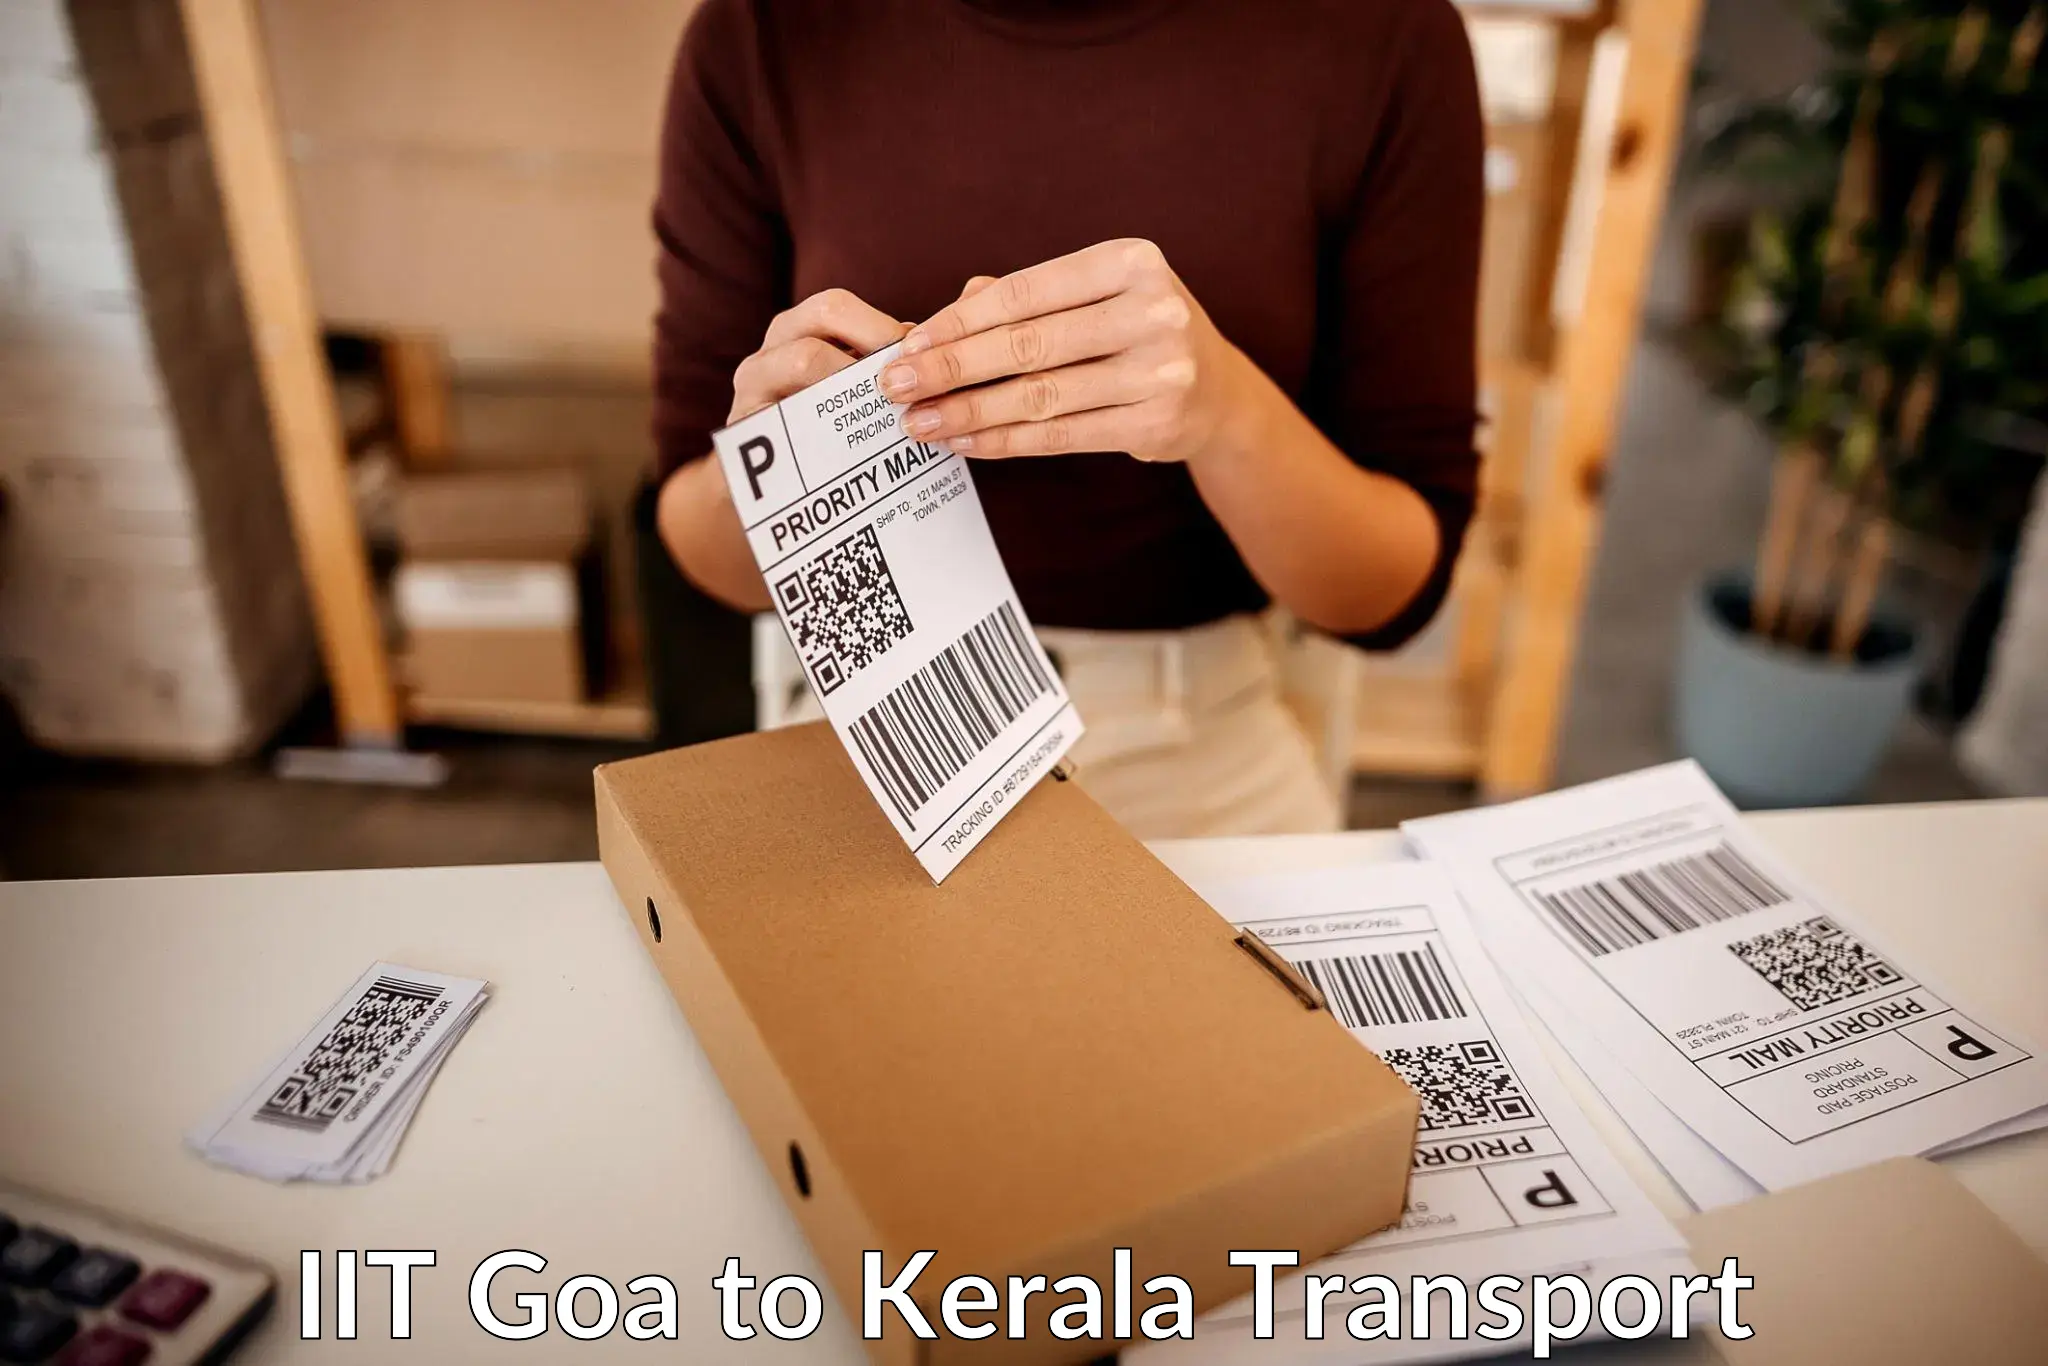 Parcel transport services IIT Goa to Manjeshwar